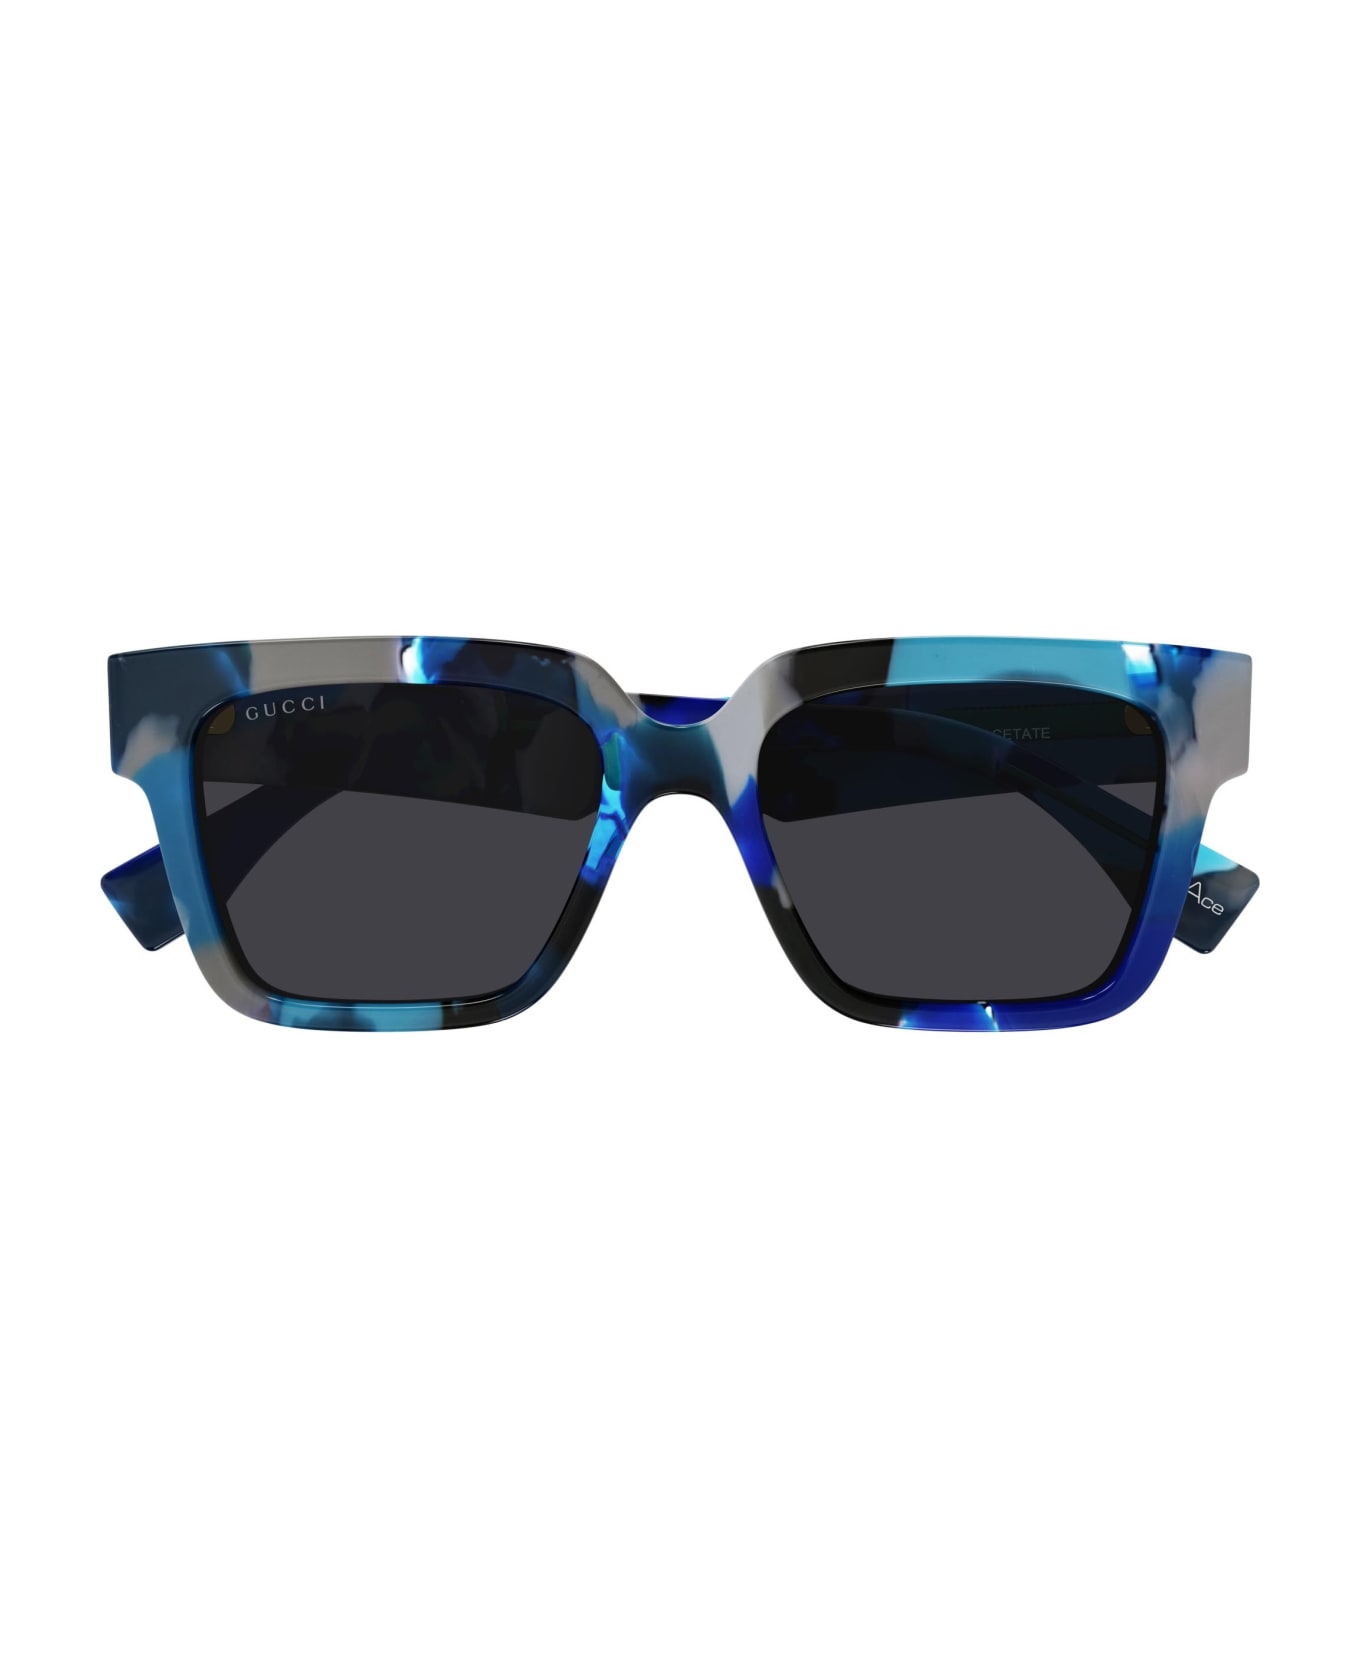 Gucci Eyewear Sunglasses - Blu/Grigio サングラス